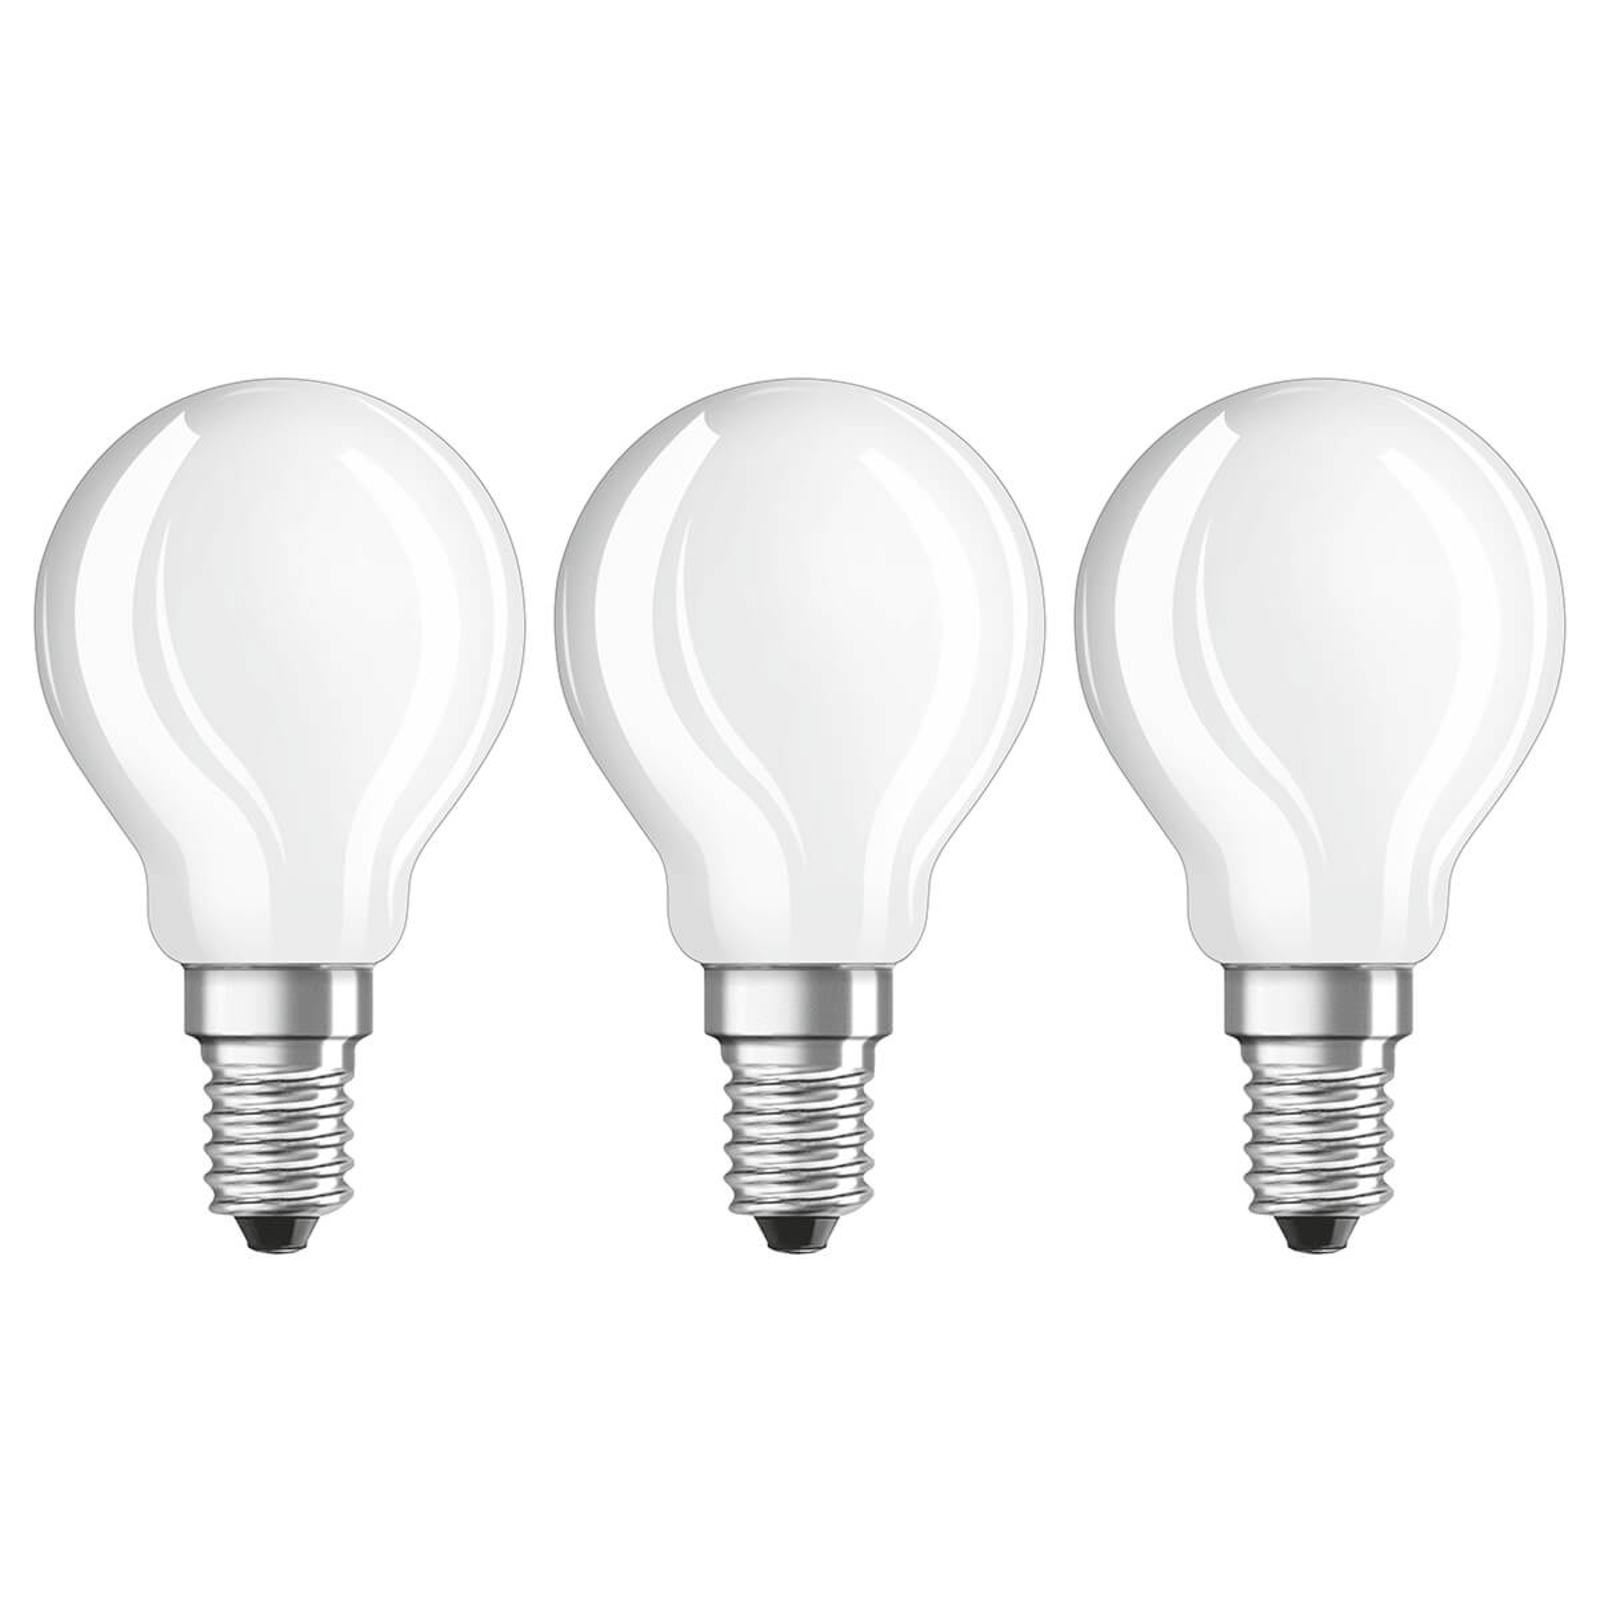 LED-lampa E14 4W, varmvit, 470 lumen, 3-pack